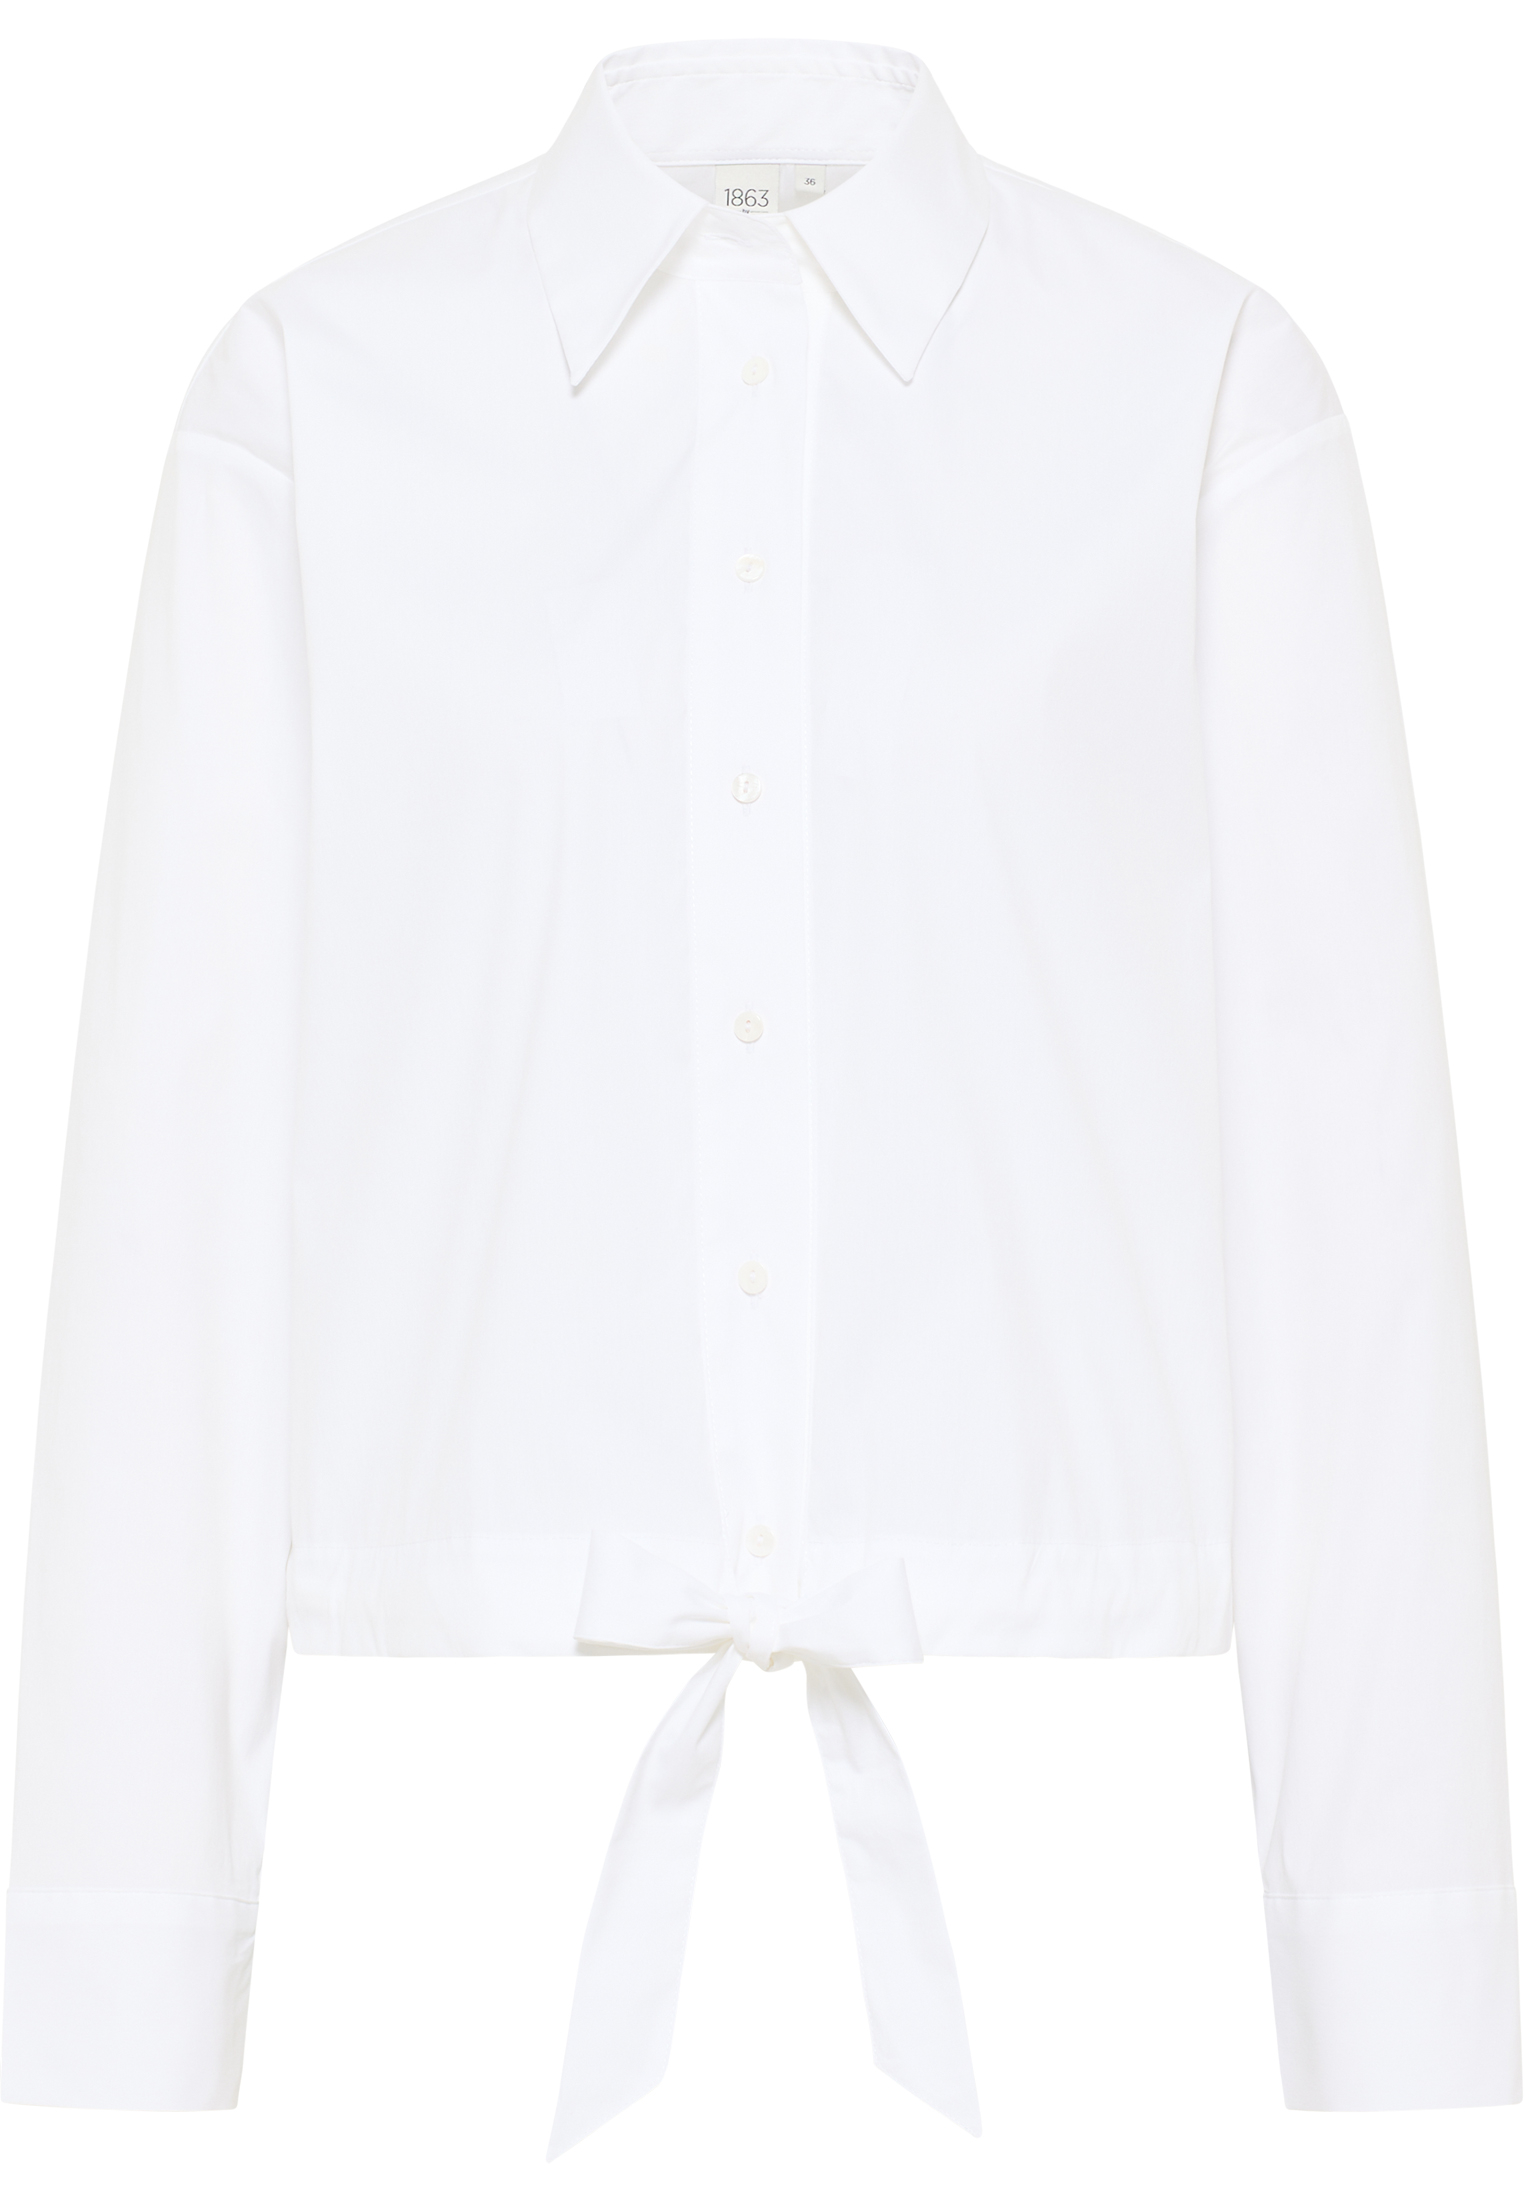 34 Bluse | Signature in weiß | | Shirt Langarm unifarben 2BL04027-00-01-34-1/1 | weiß